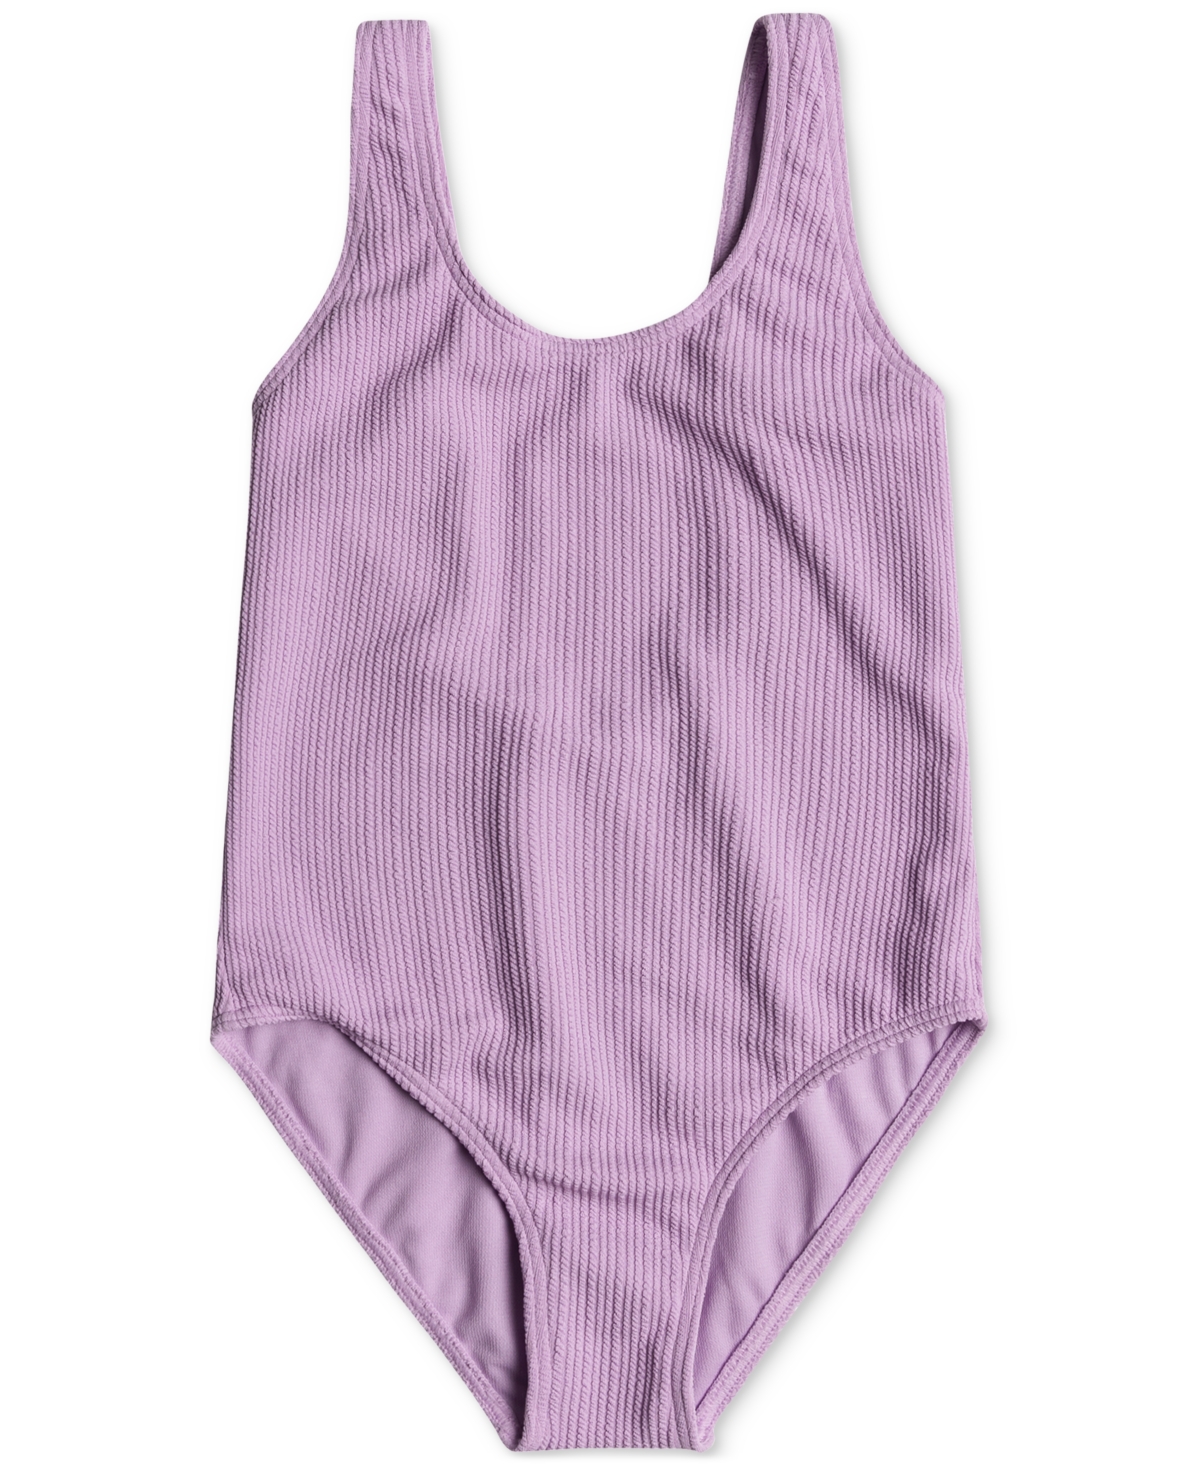 Roxy Kids' Big Girls Aruba Textured One-piece Swimsuit In Crocus Pet